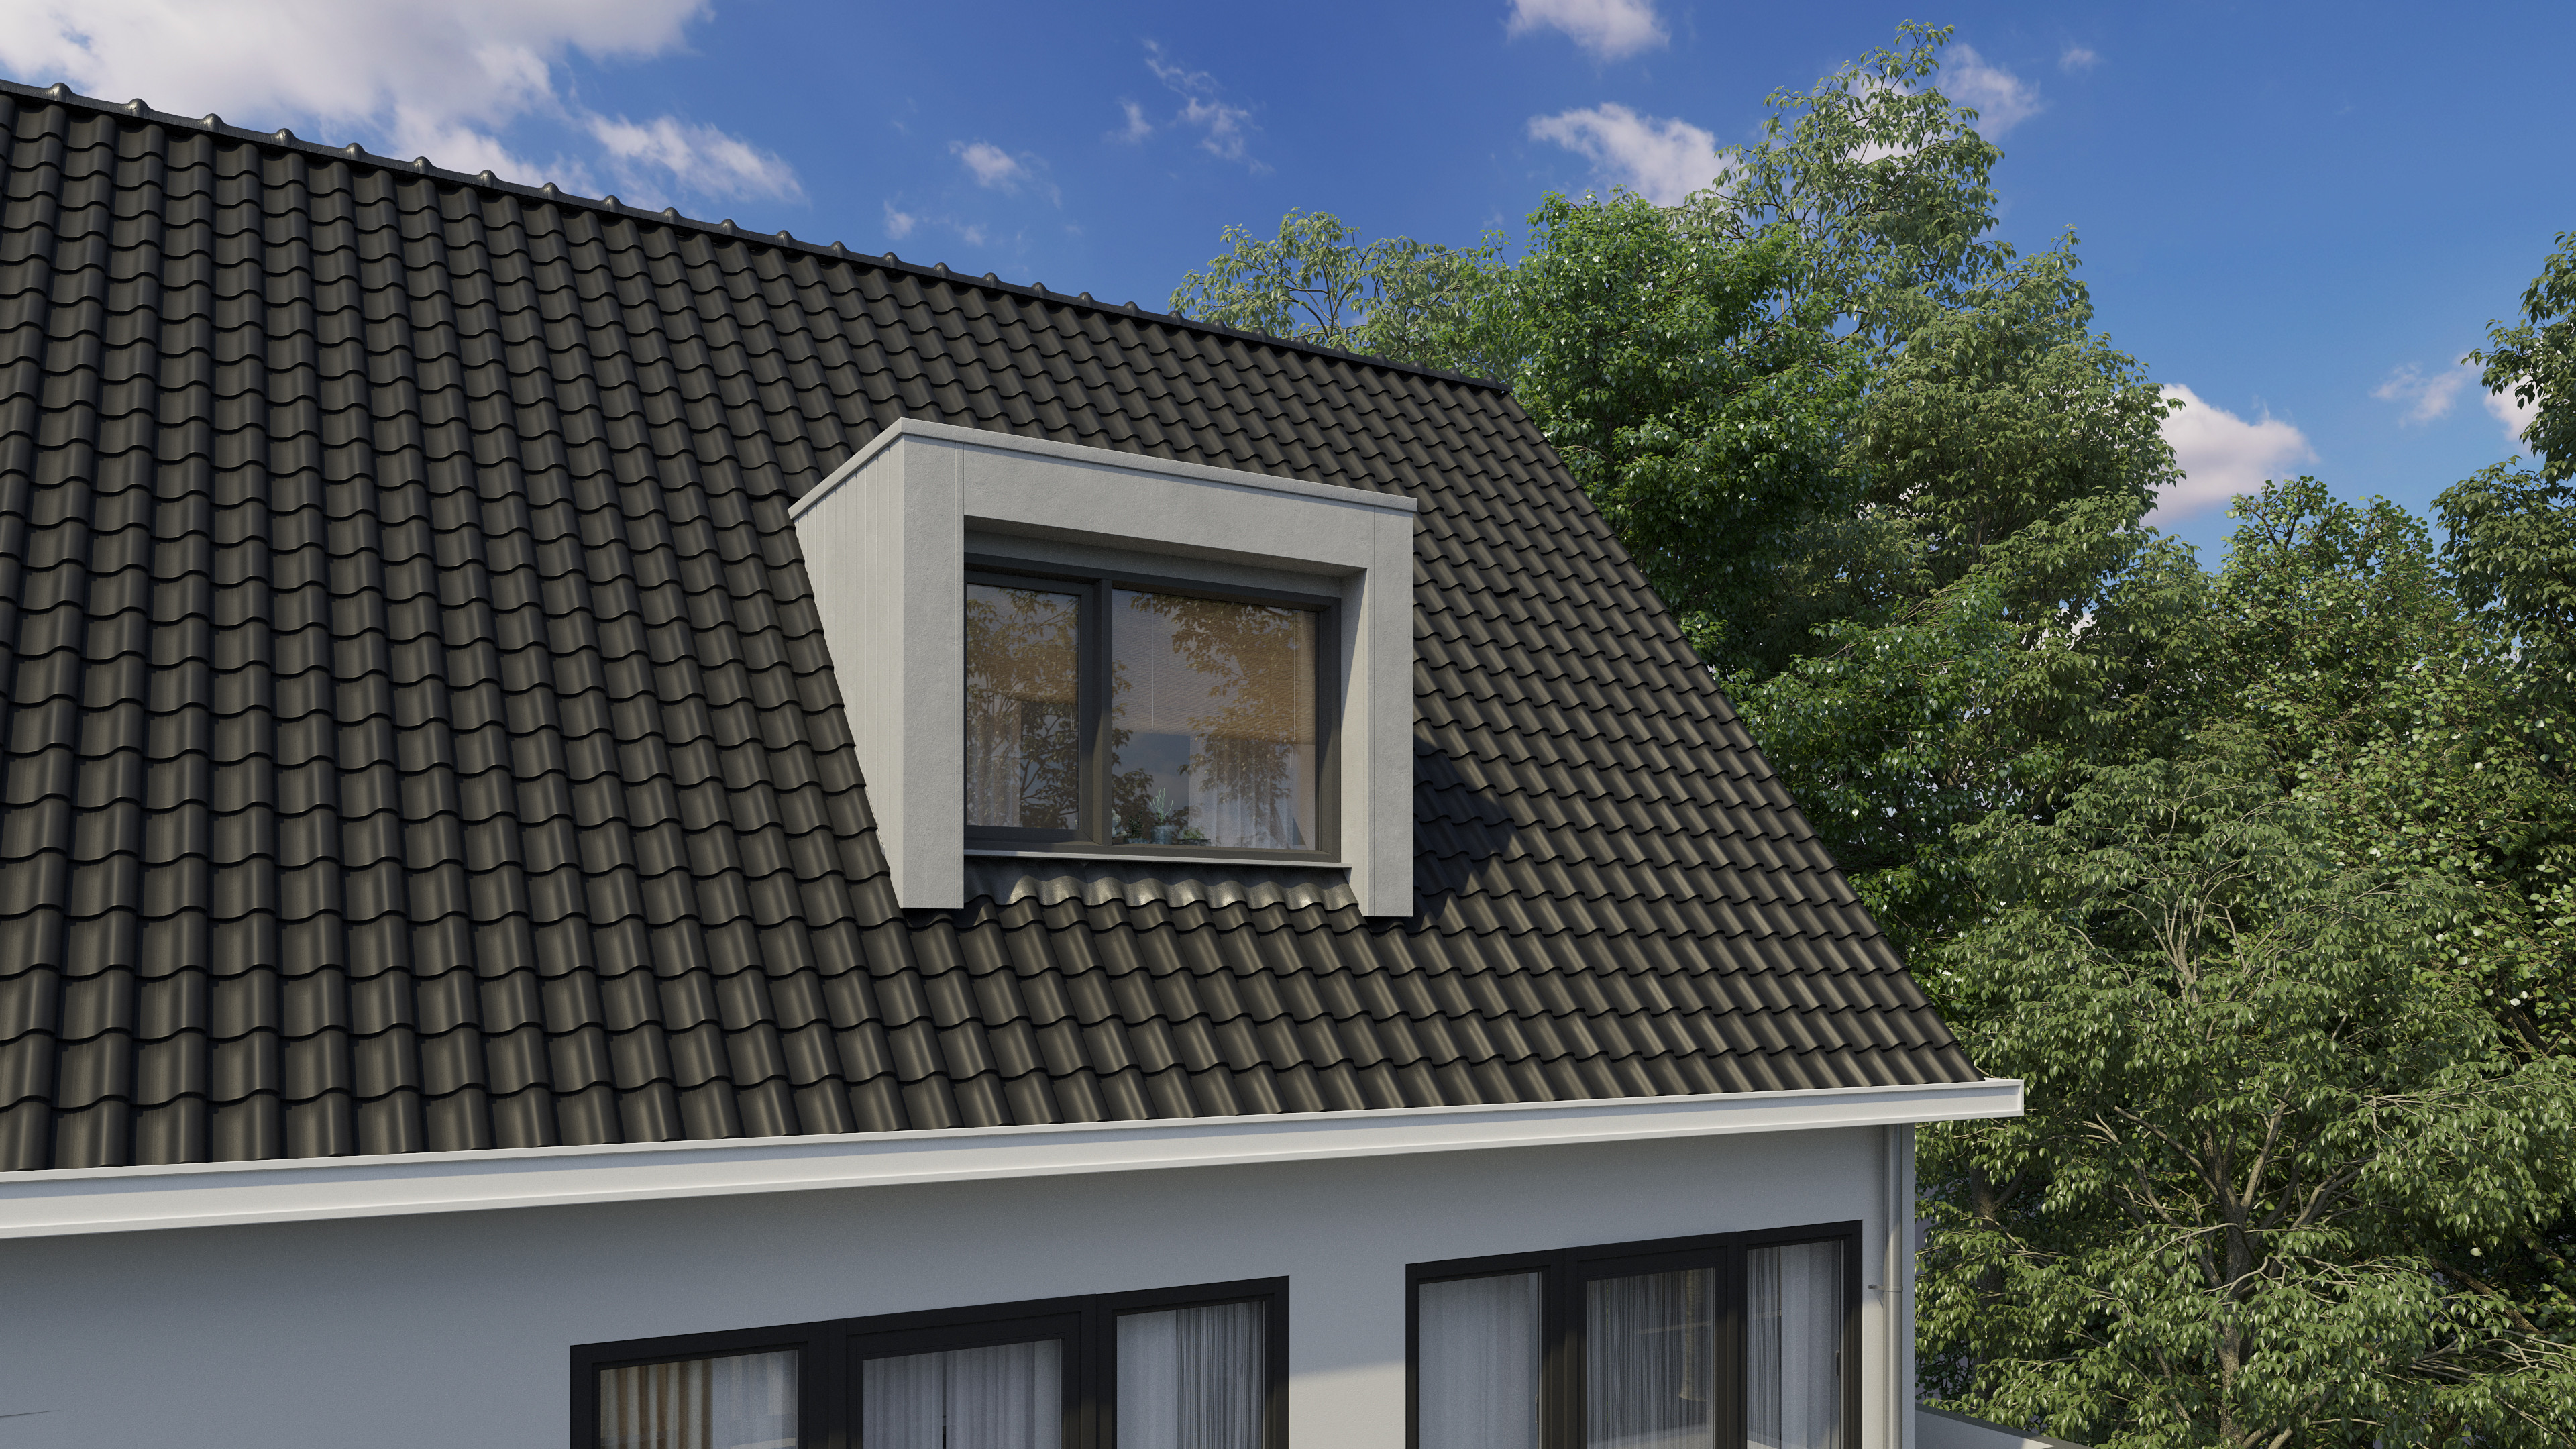 Grijze dakkapel van 2,5 meter op zwart dak. Kosten dakkapel 3 meter inclusief montage, verschilt in indeling.